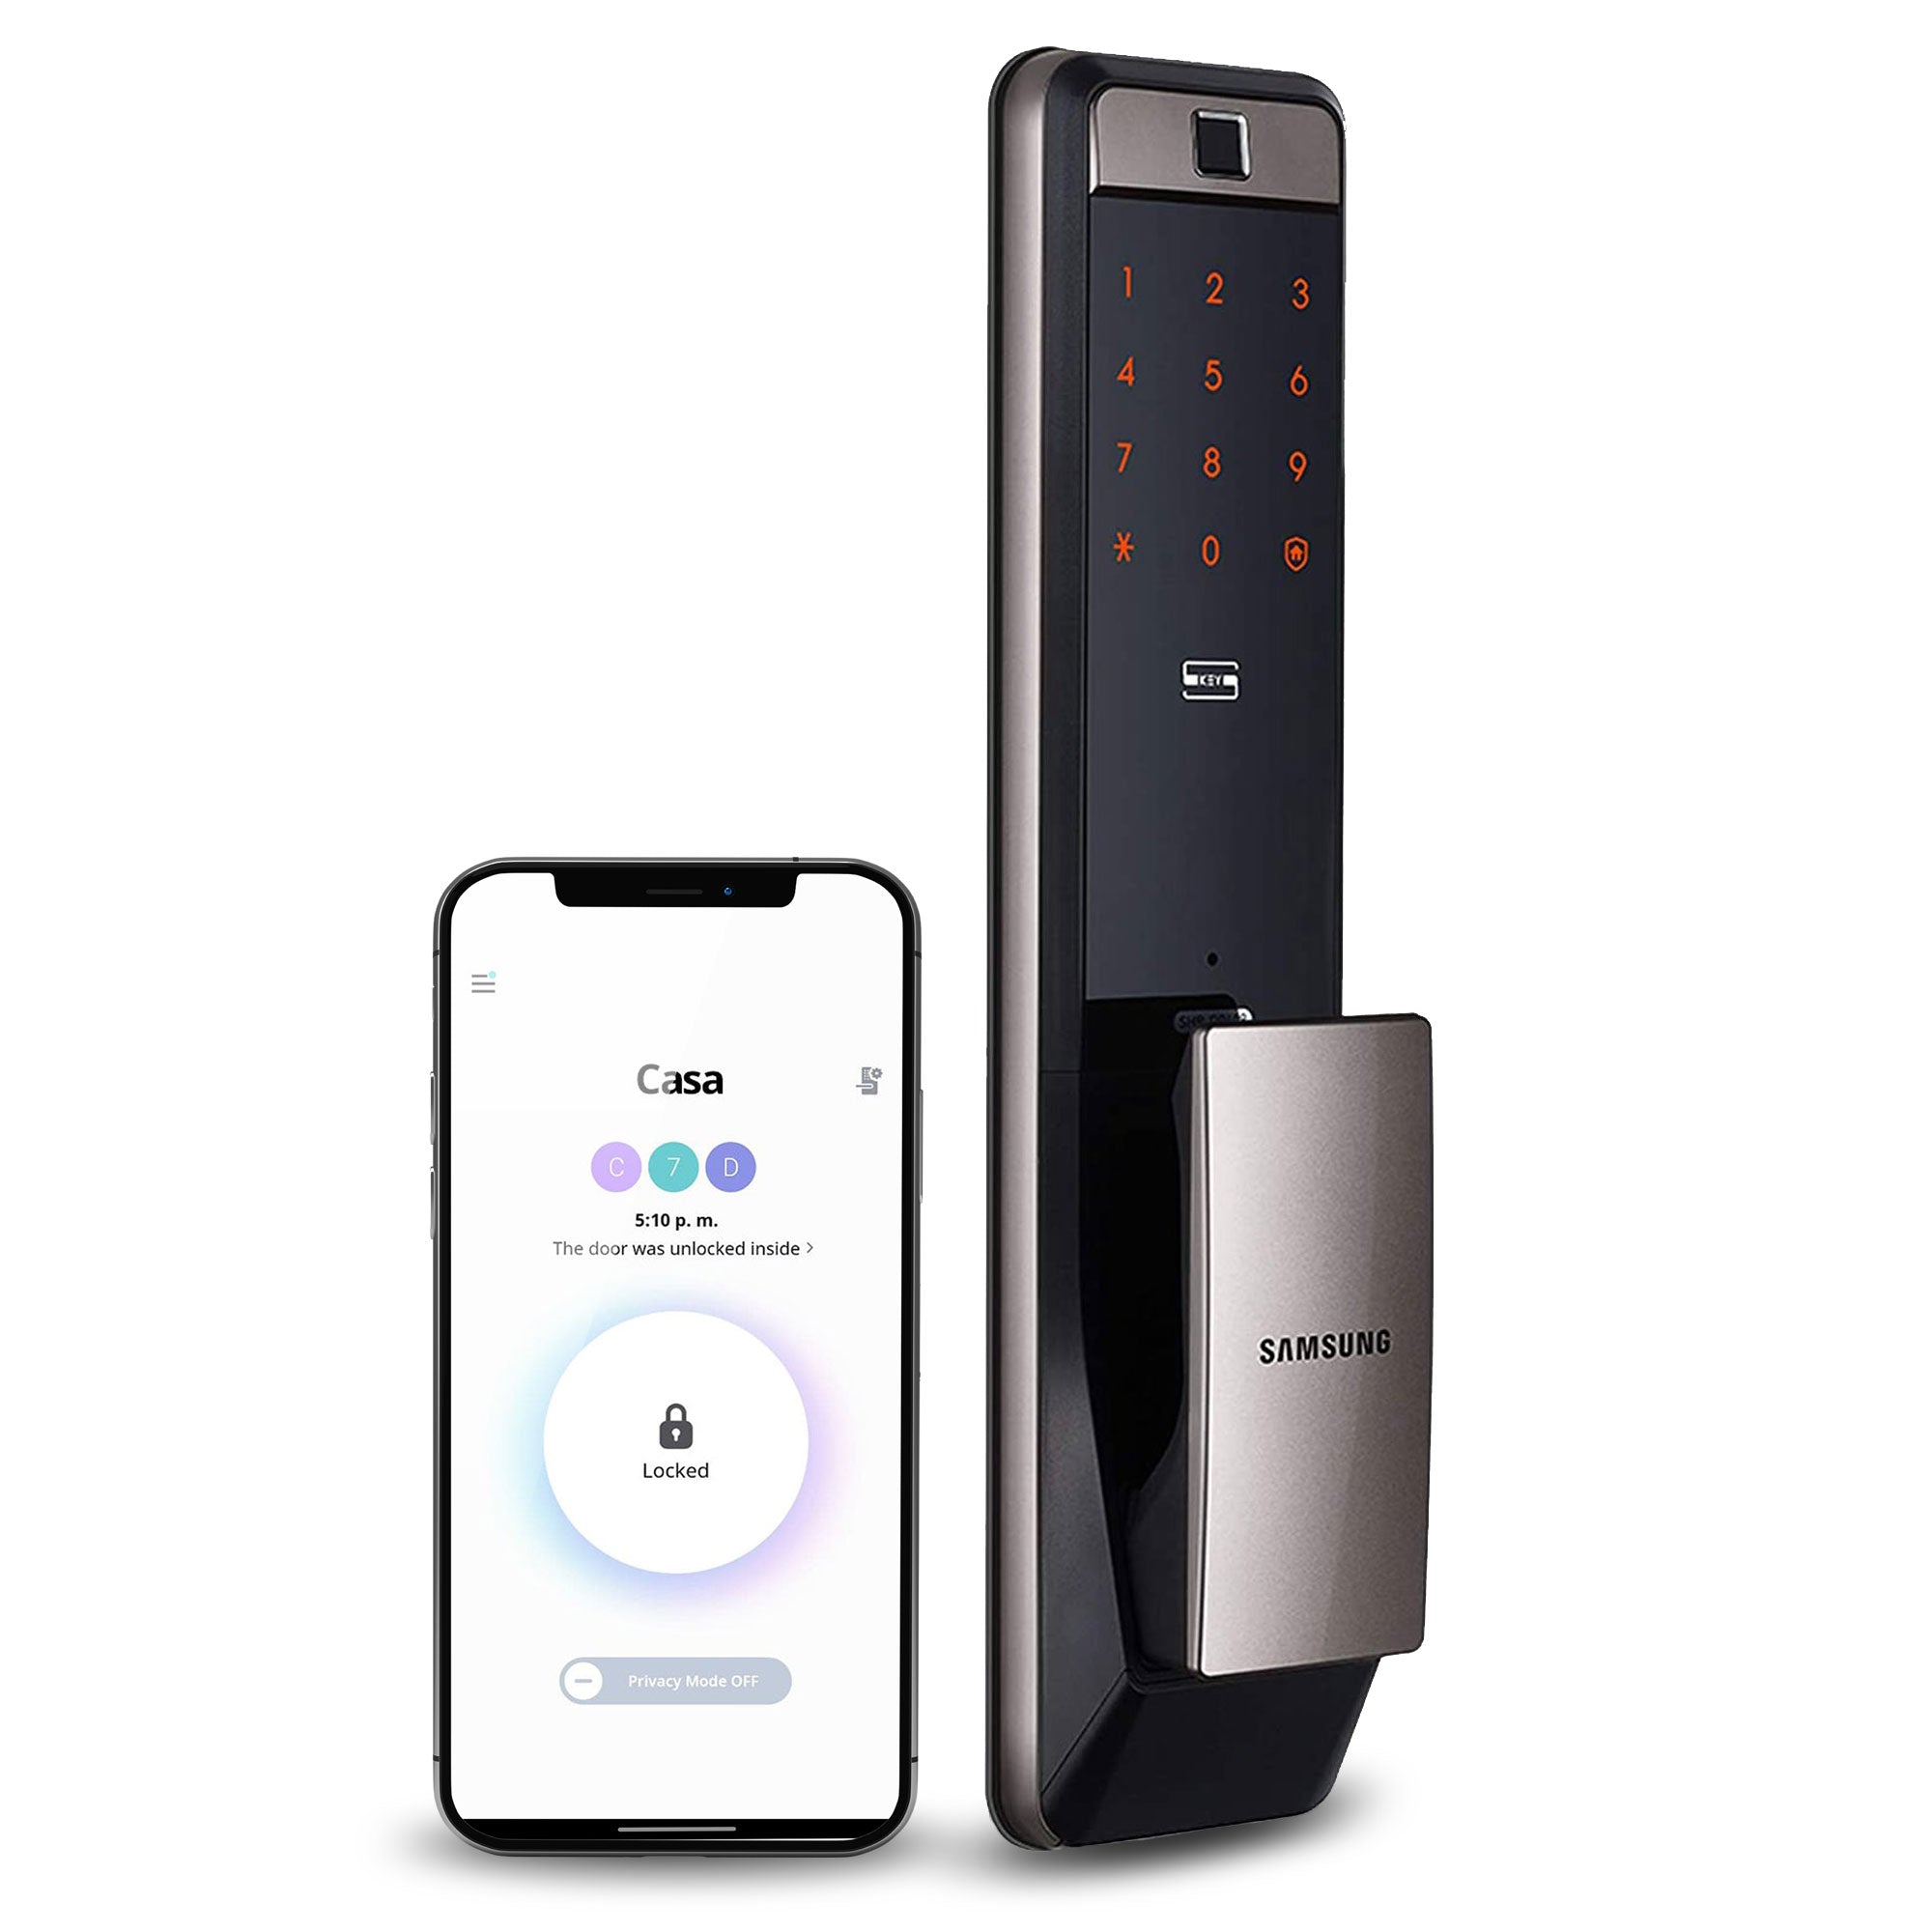 Cerradura electrónica Samsung SHP-DP609 módulo exterior y smartphone con WiFi y app Samsung Smart Lock